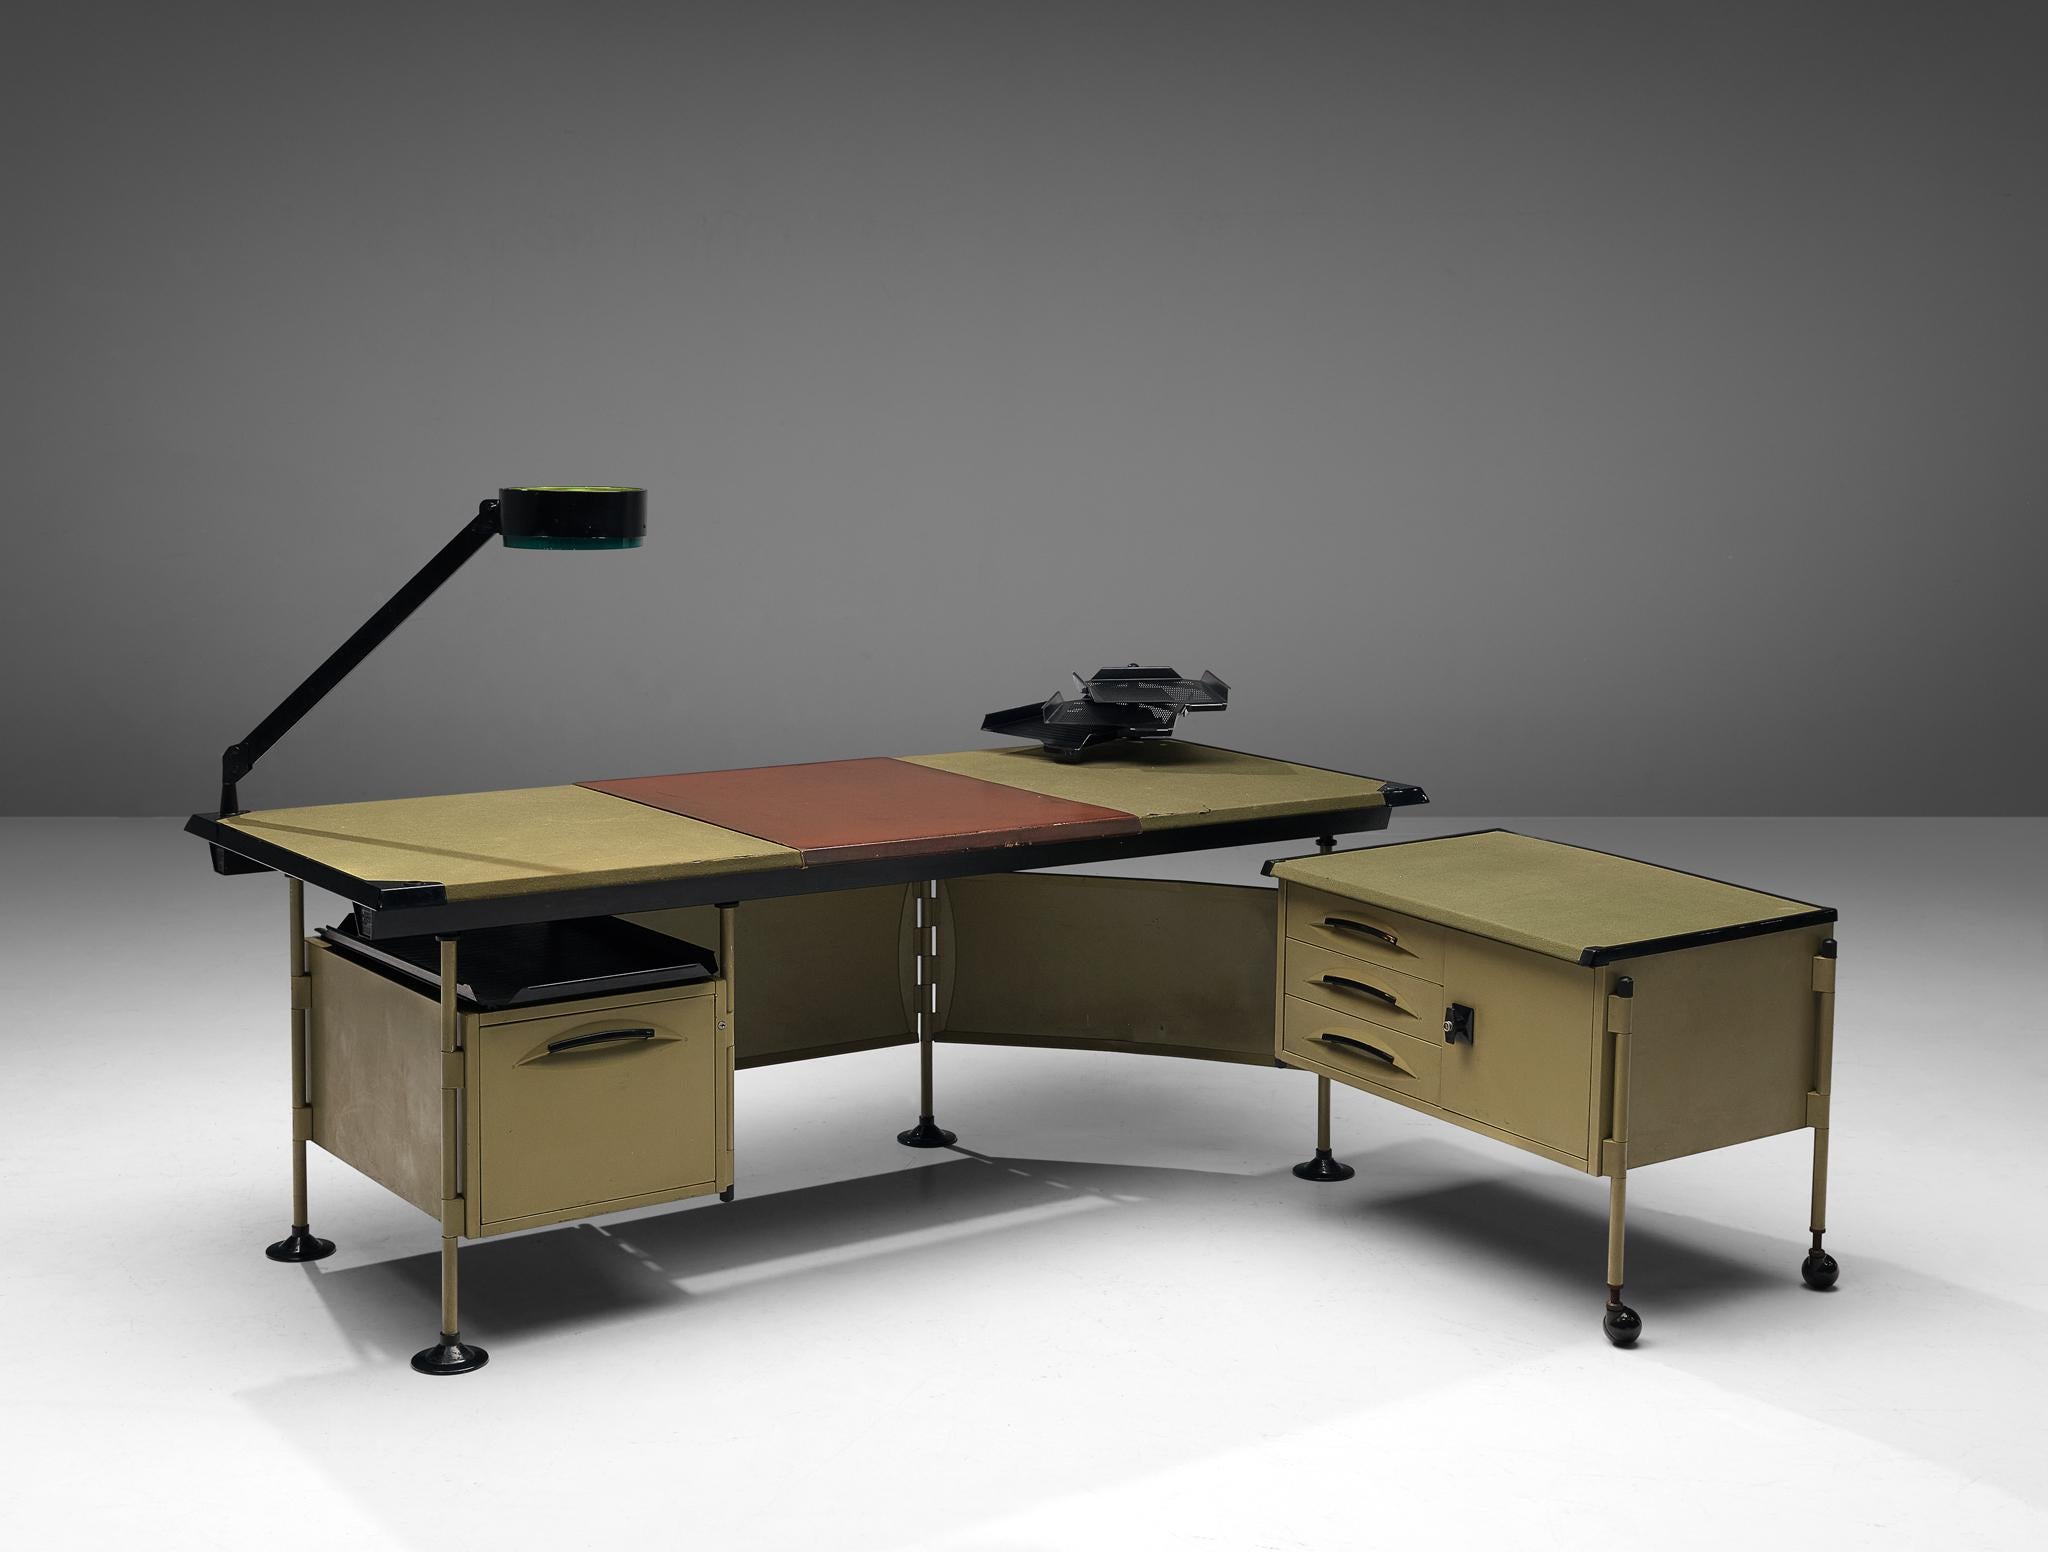 Studio BBPR for Olivetti, 'Spazio' desk with lamp, metal, vinyl, plastic, Italy, ca. 1960 

The 'Spazio' series was designed by Studio BBPR for Olivetti in 1960. It won the Compasso d'Oro Award in 1962. Today the desk of the 'Spazio' series is